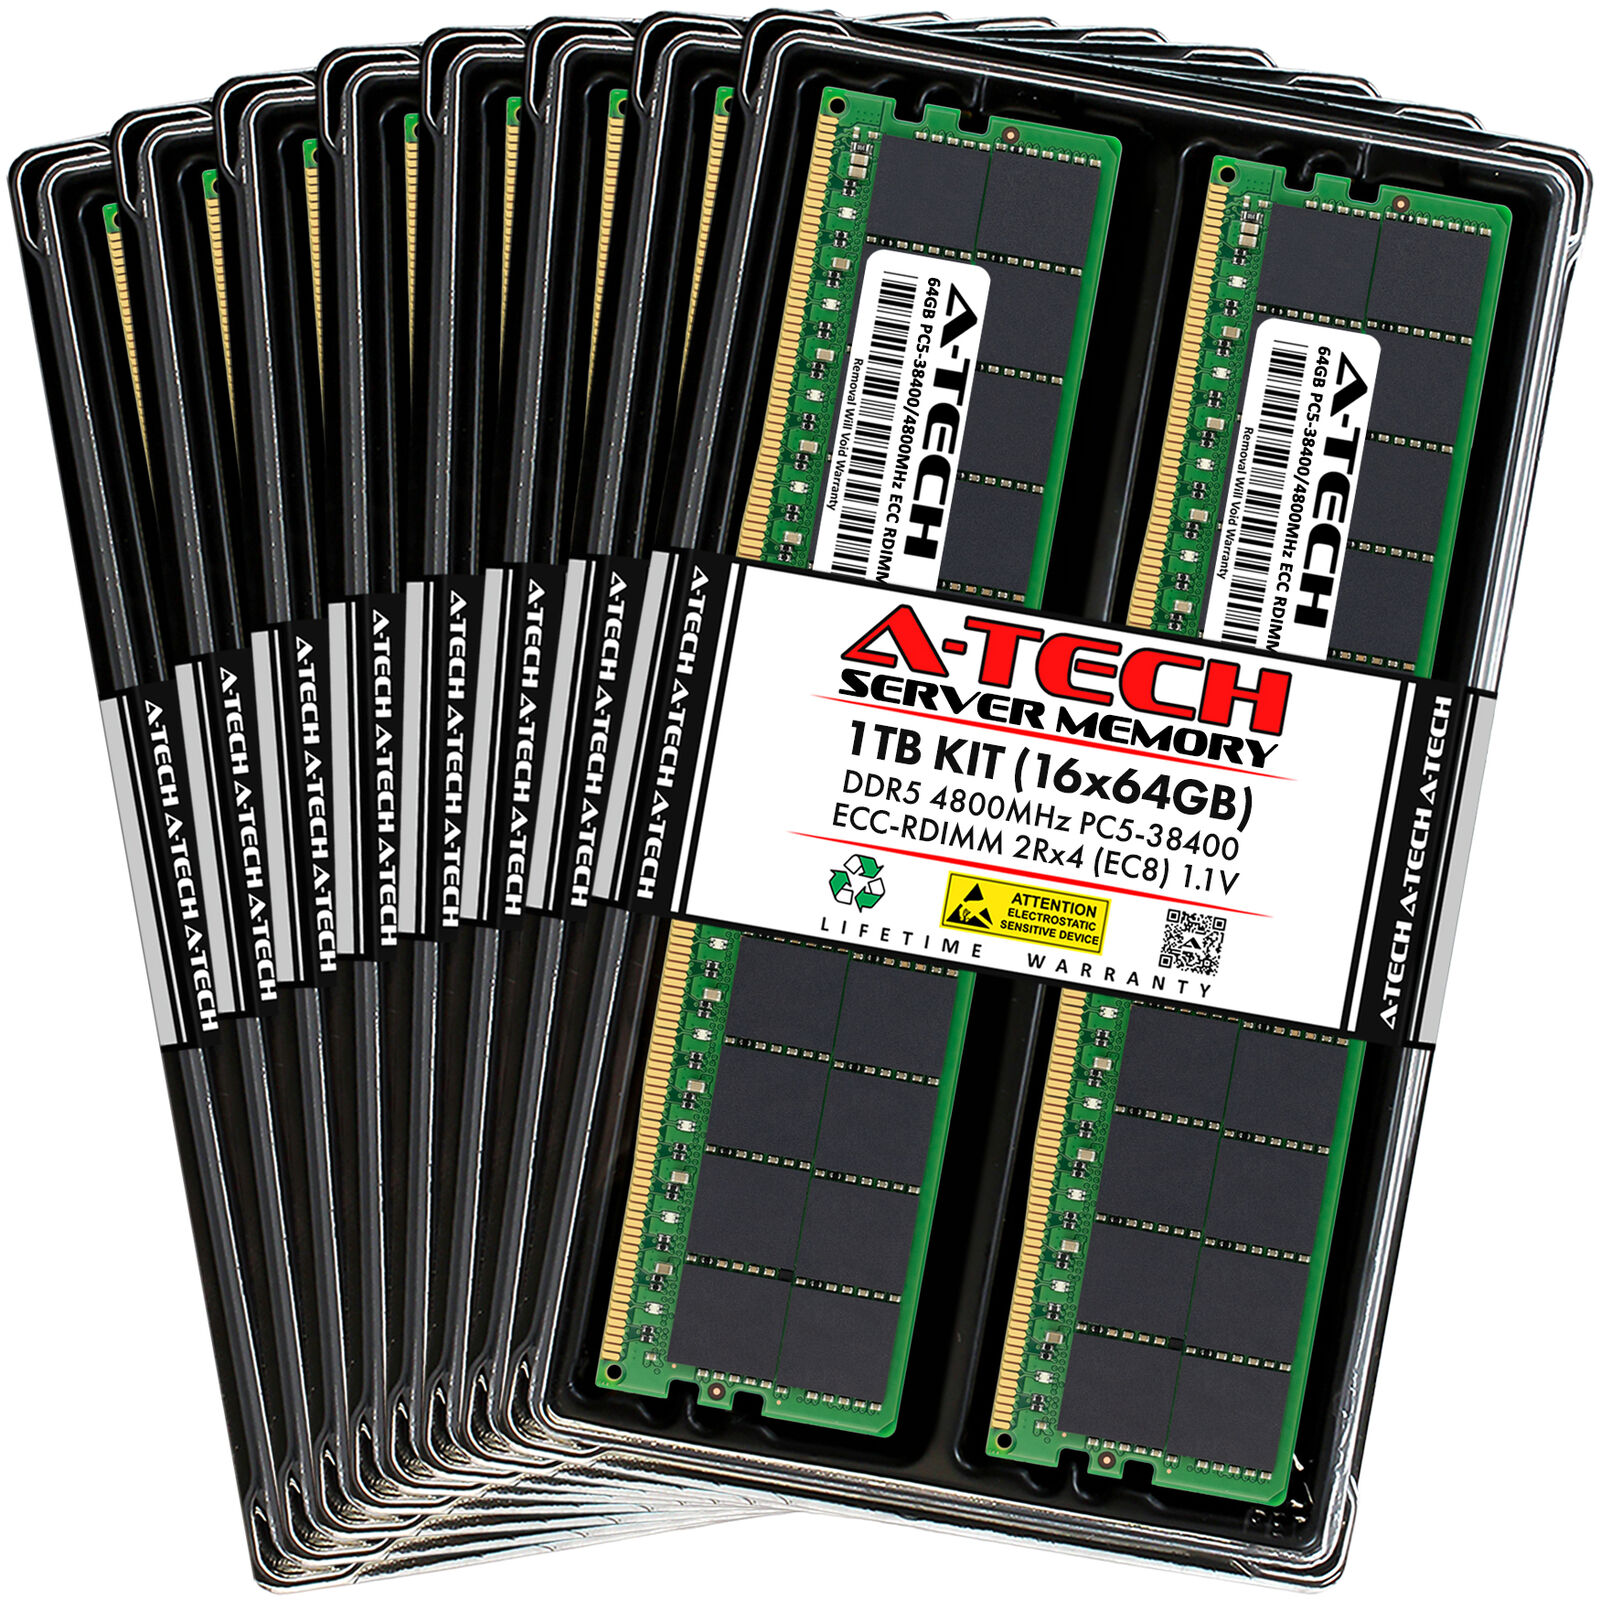 1TB 16x64GB PC5-4800 EC8 RDIMM Supermicro 111C-NR Memory RAM